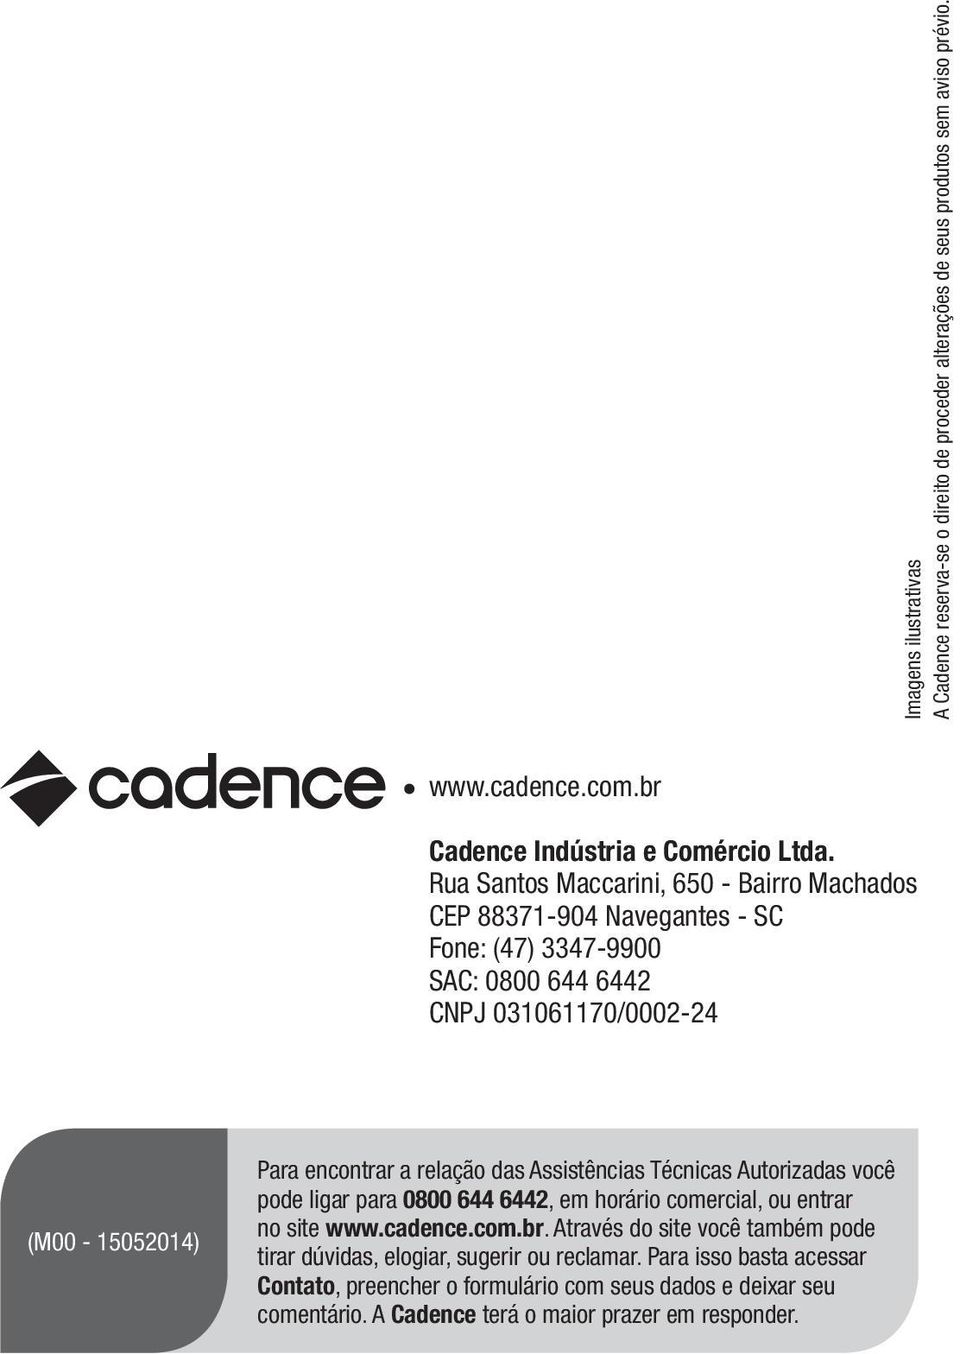 relação das Assistências Técnicas Autorizadas você pode ligar para 0800 644 6442, em horário comercial, ou entrar no site www.cadence.com.br.